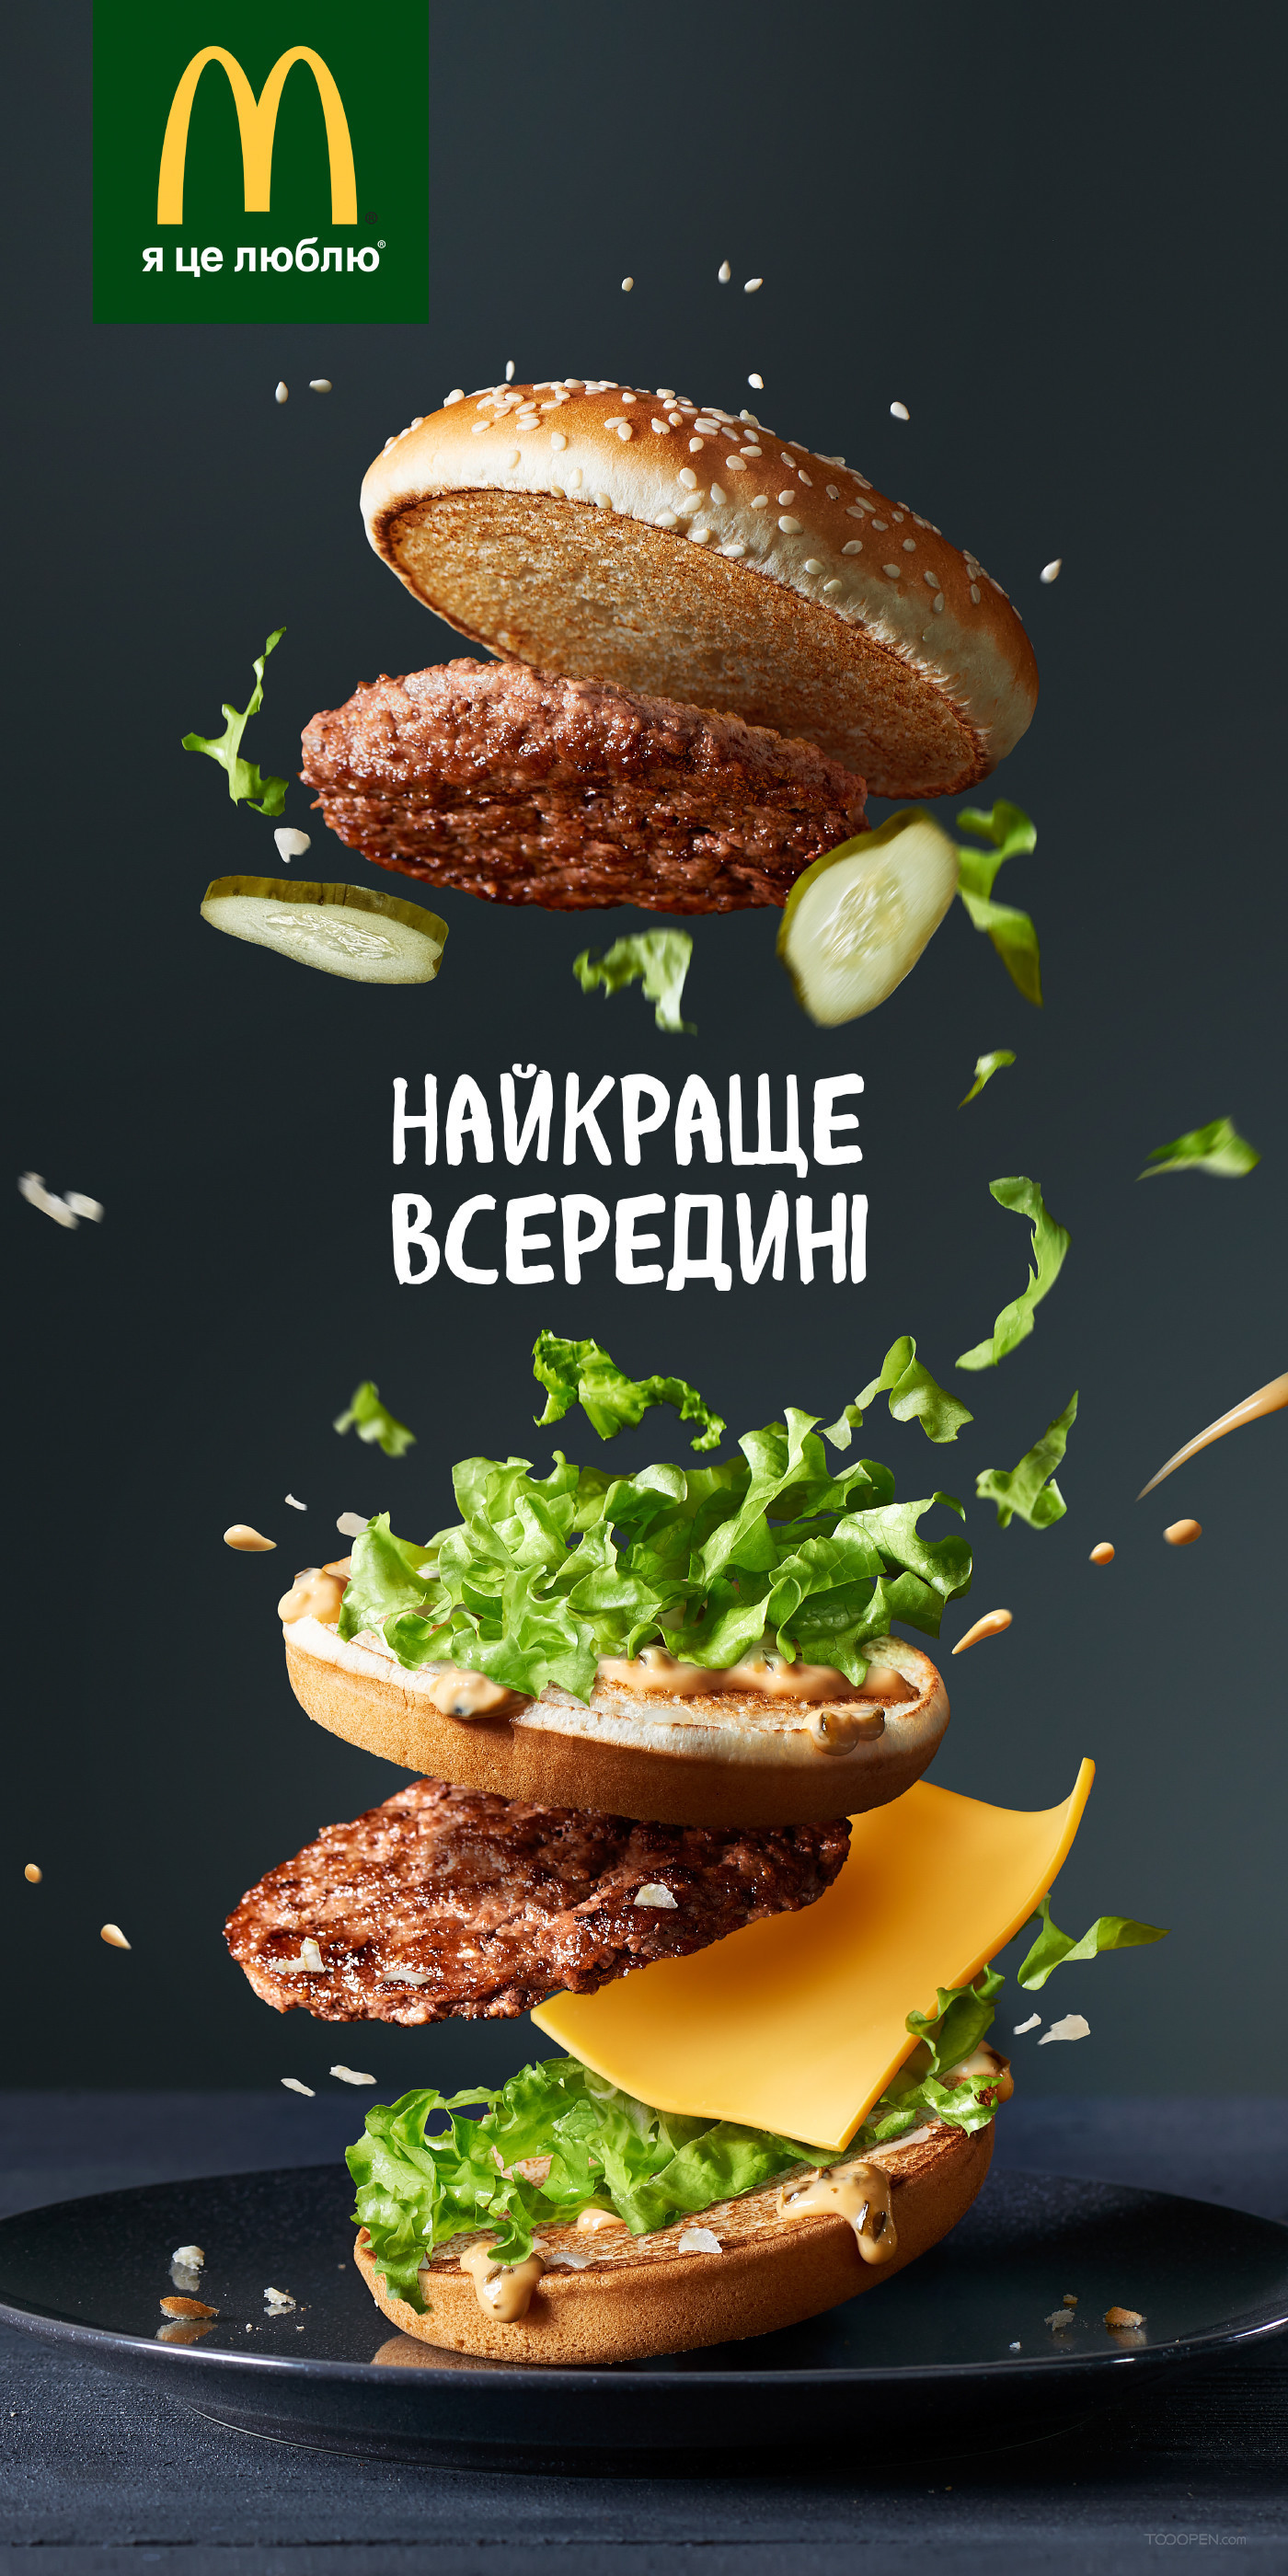 麦当劳高清汉堡包创意广告摄影图片-01